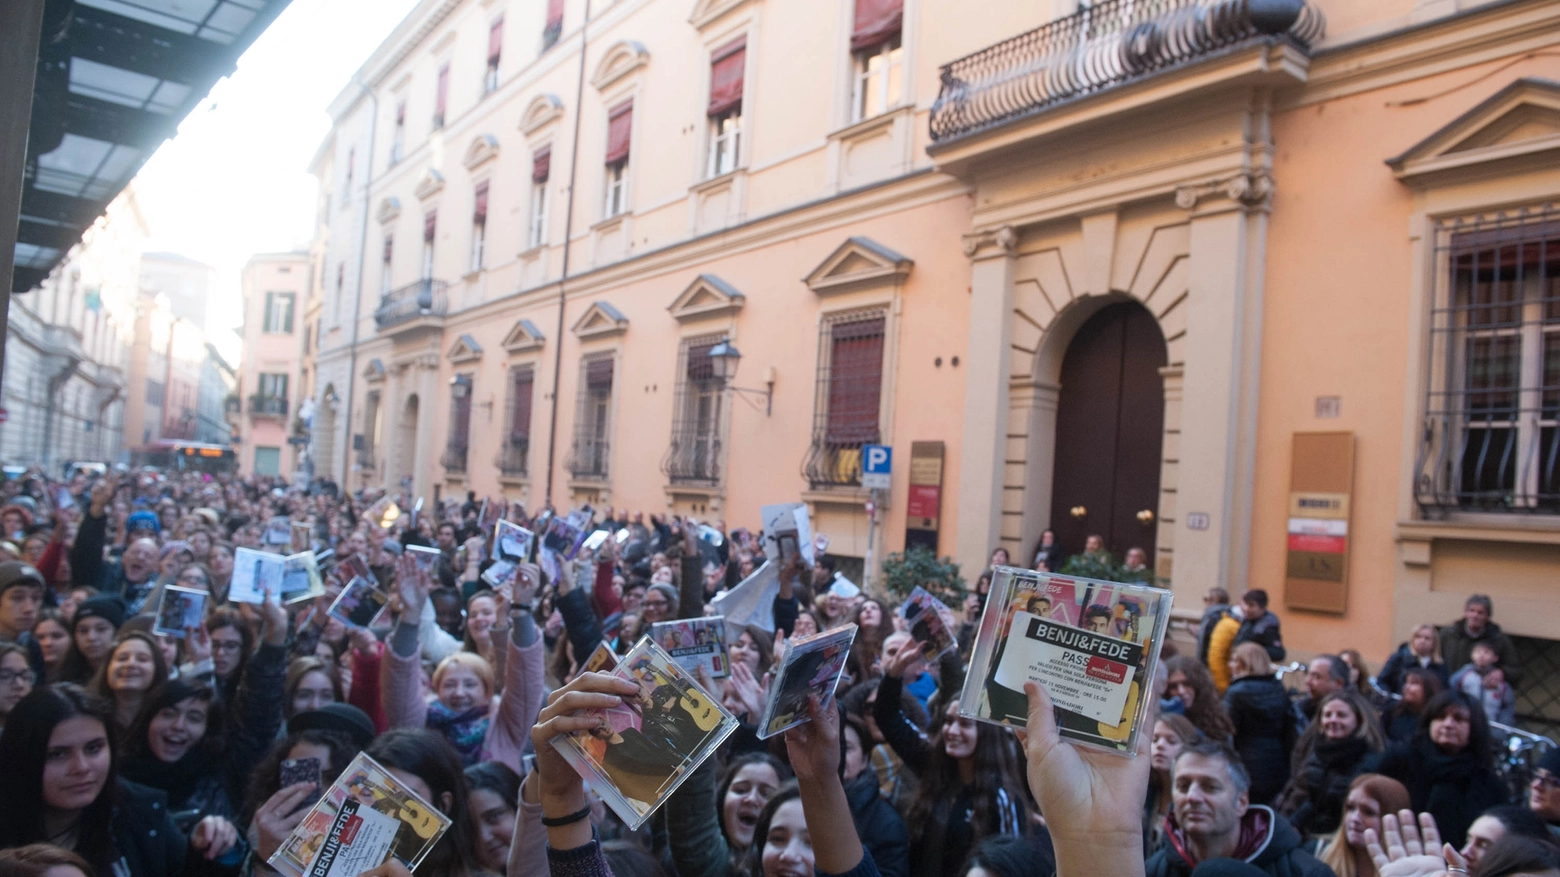 Benji& Fede, i fans in attesa alla Mondadori in via d'Azeglio a Bologna (Foto Schicchi)